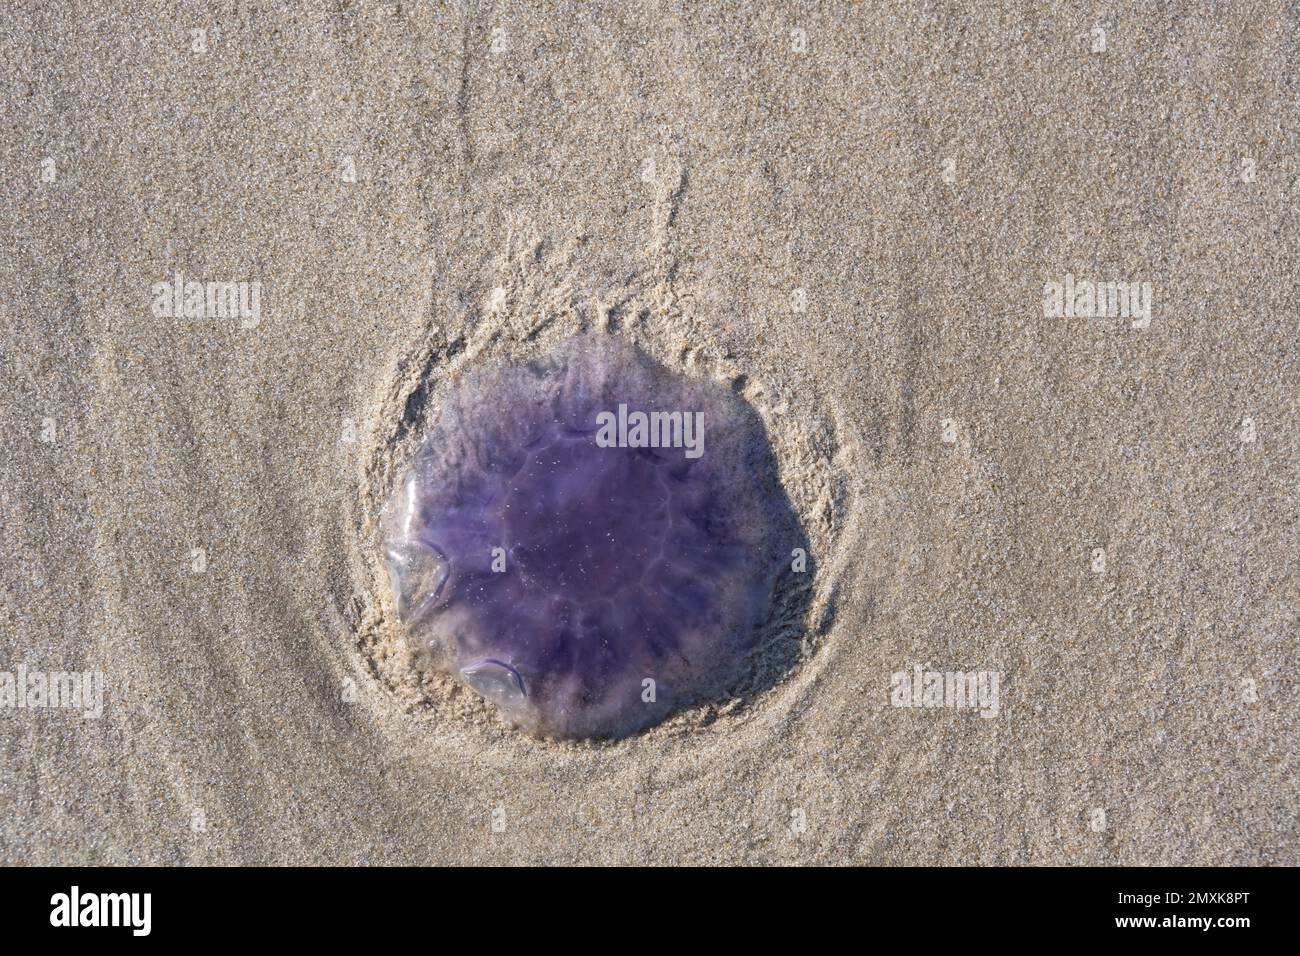 Méduse bleu (Cyanea lamarckii) sur une plage de sable, Basse-Saxe Mer des Wadden, Ile de Juist, Frise orientale, Basse-Saxe, Allemagne, Europe Banque D'Images